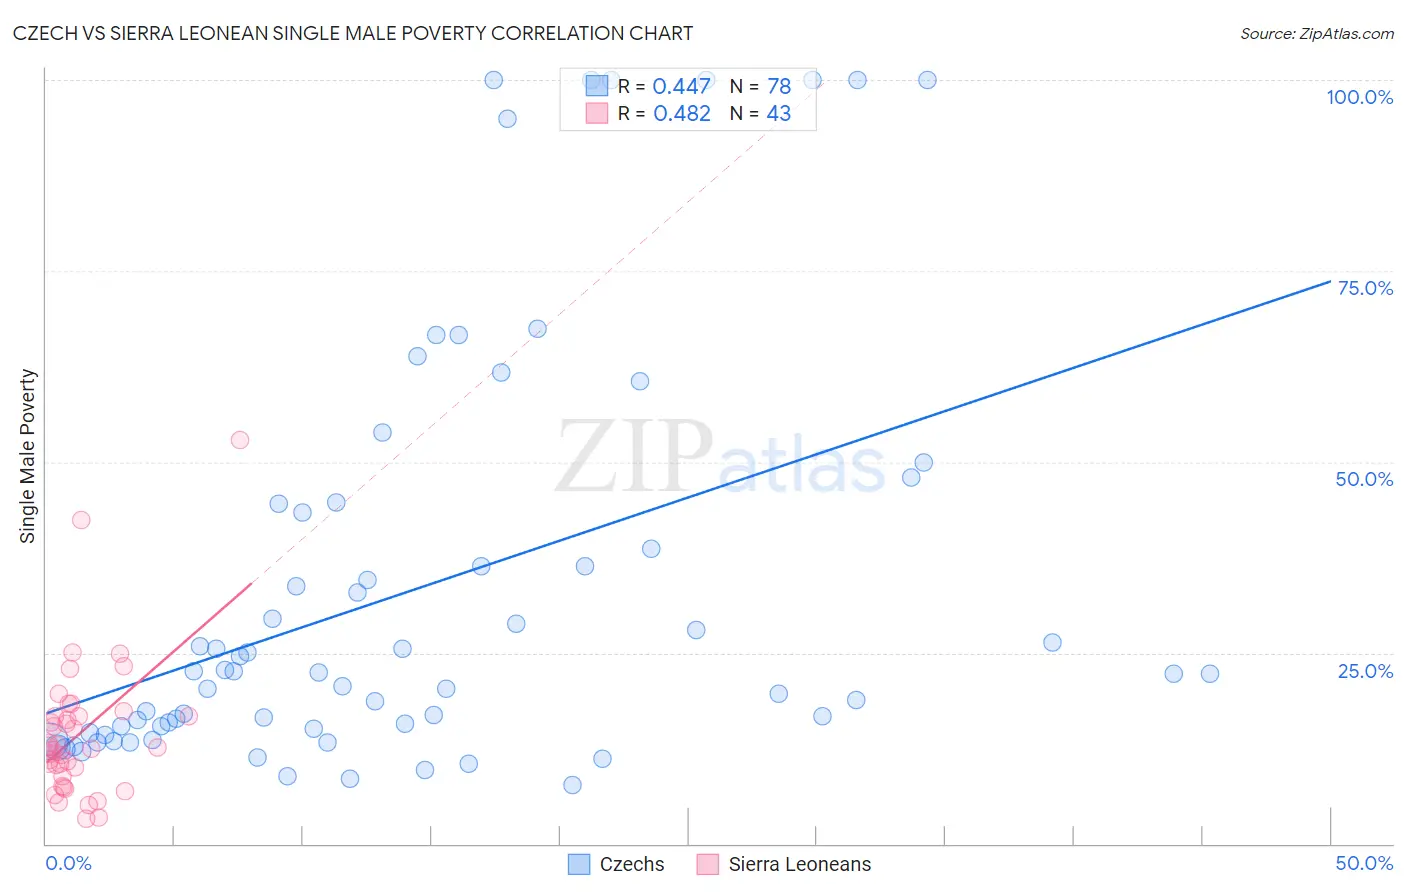 Czech vs Sierra Leonean Single Male Poverty